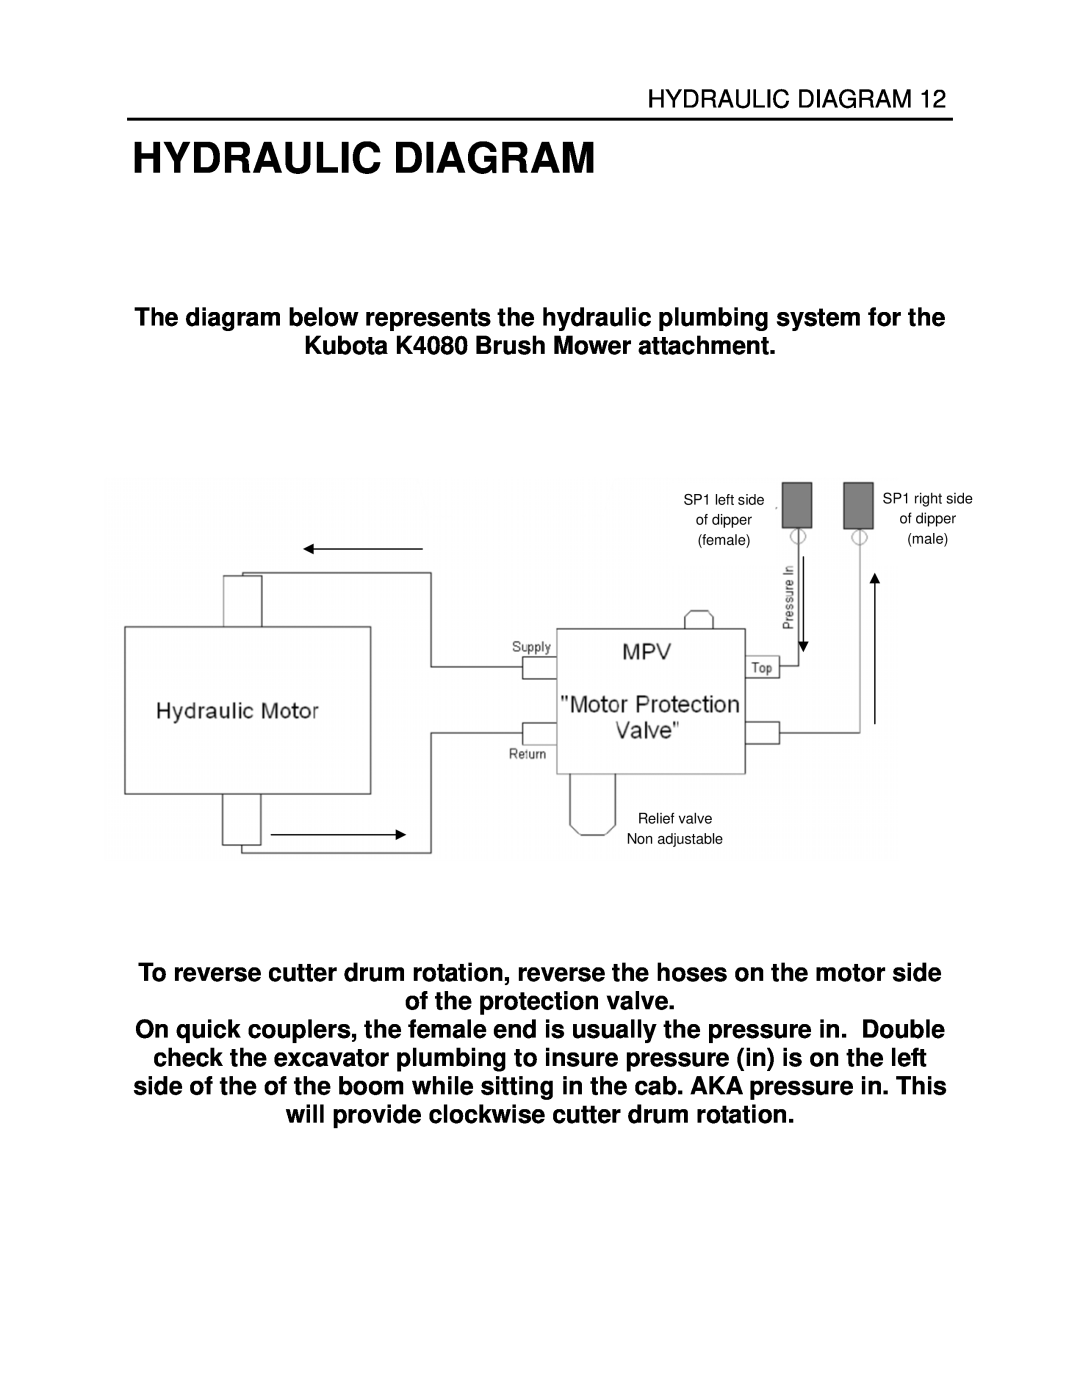 Generac Power Systems K4080 manual Hydraulic Diagram 